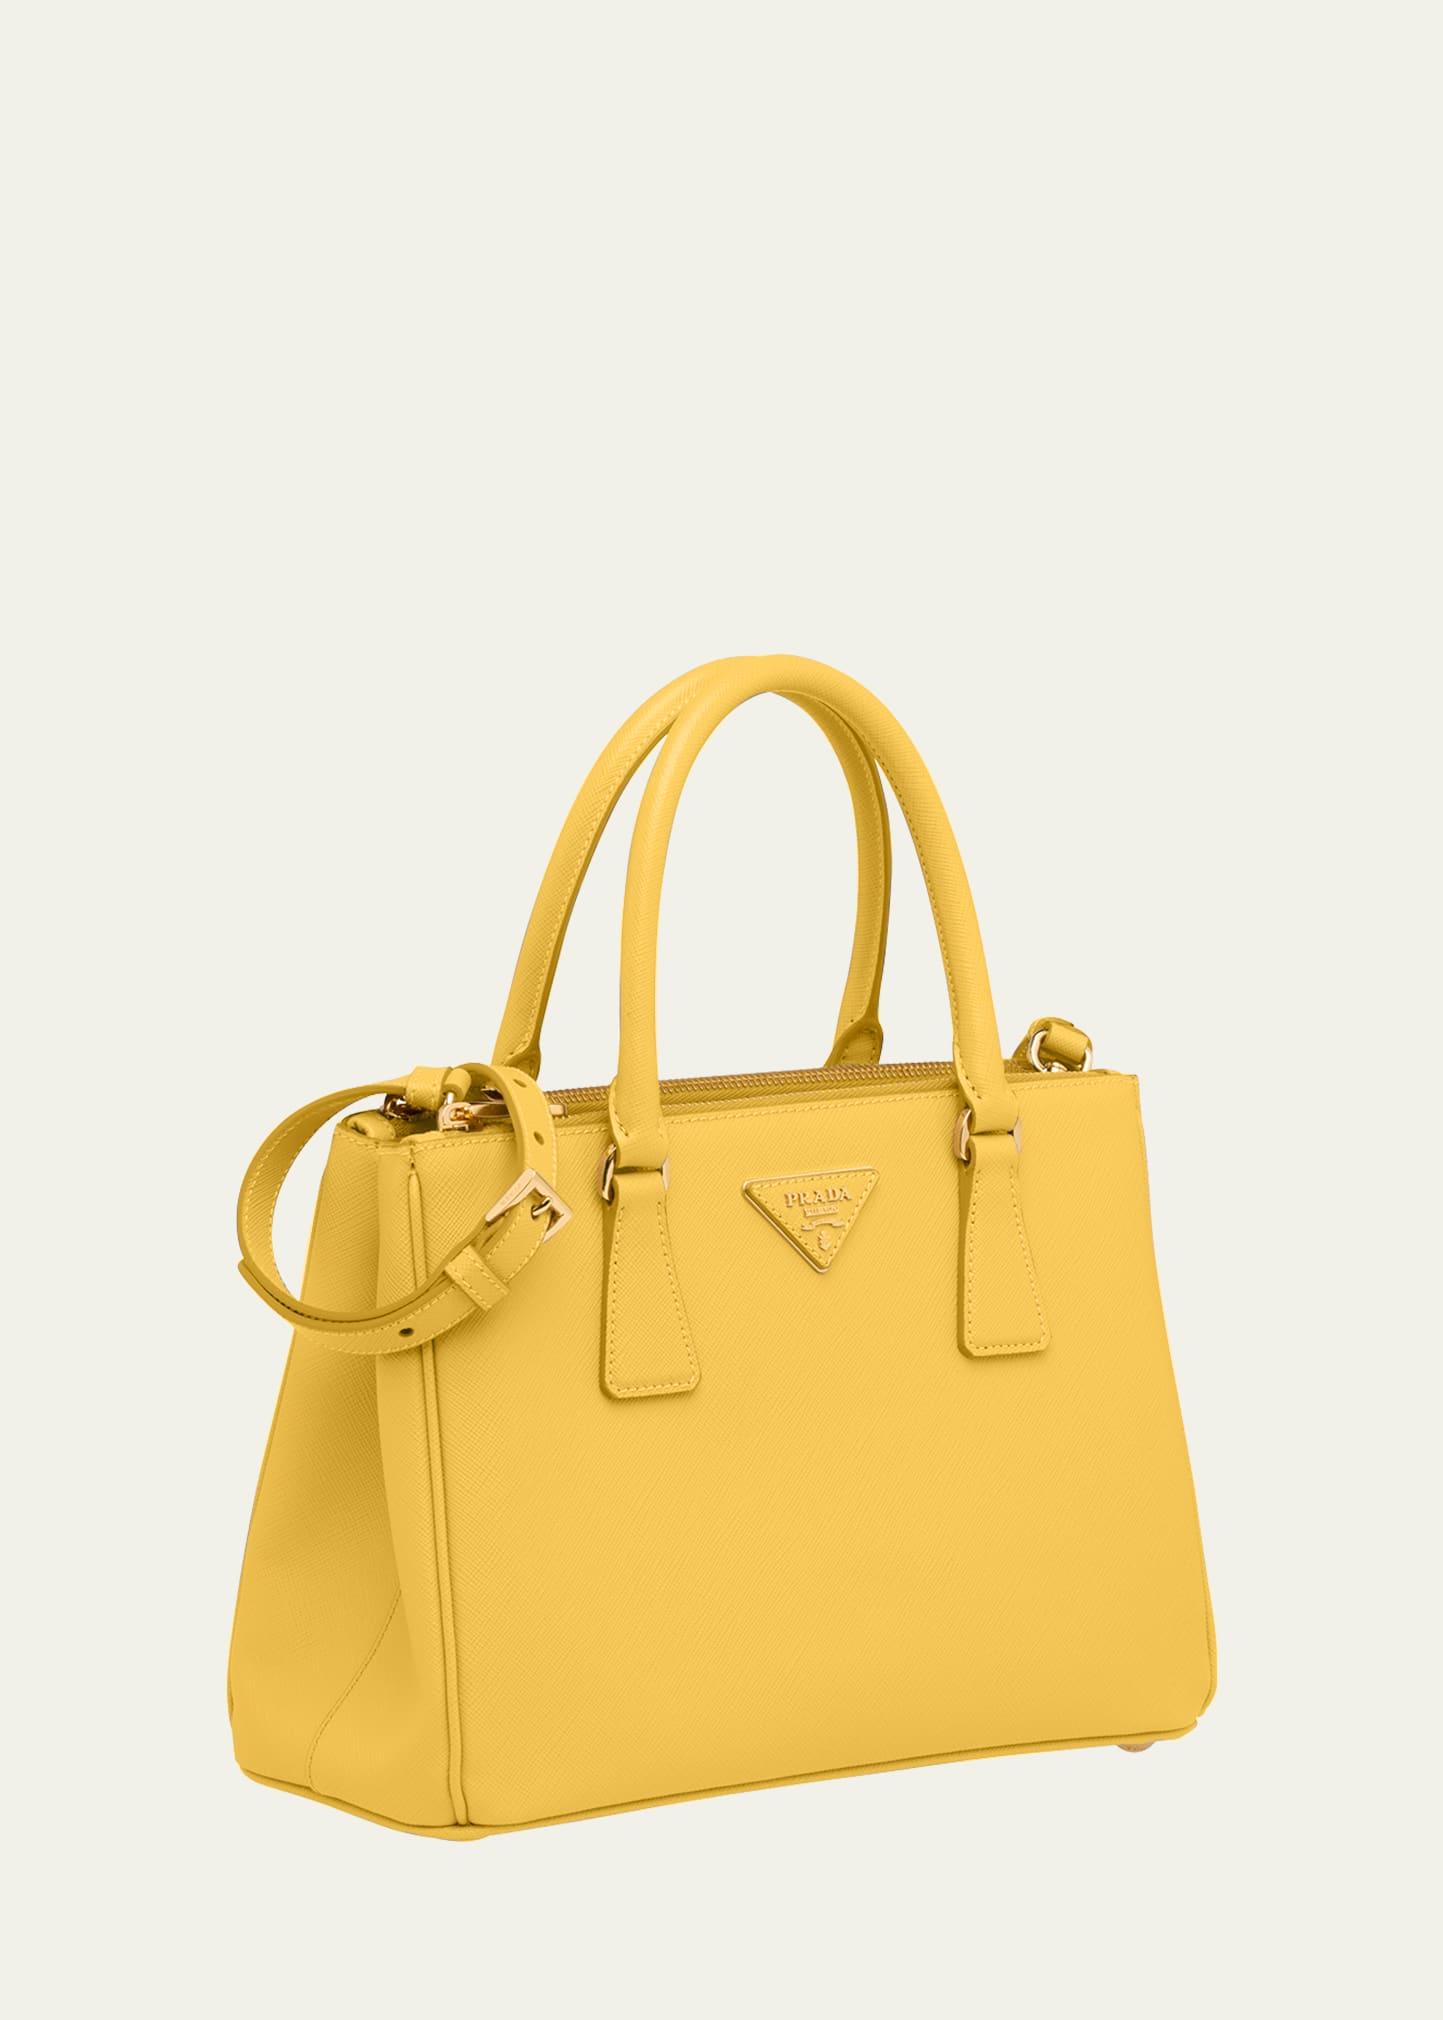 Prada Galleria Small Saffiano Double-zip Tote Bag in Yellow